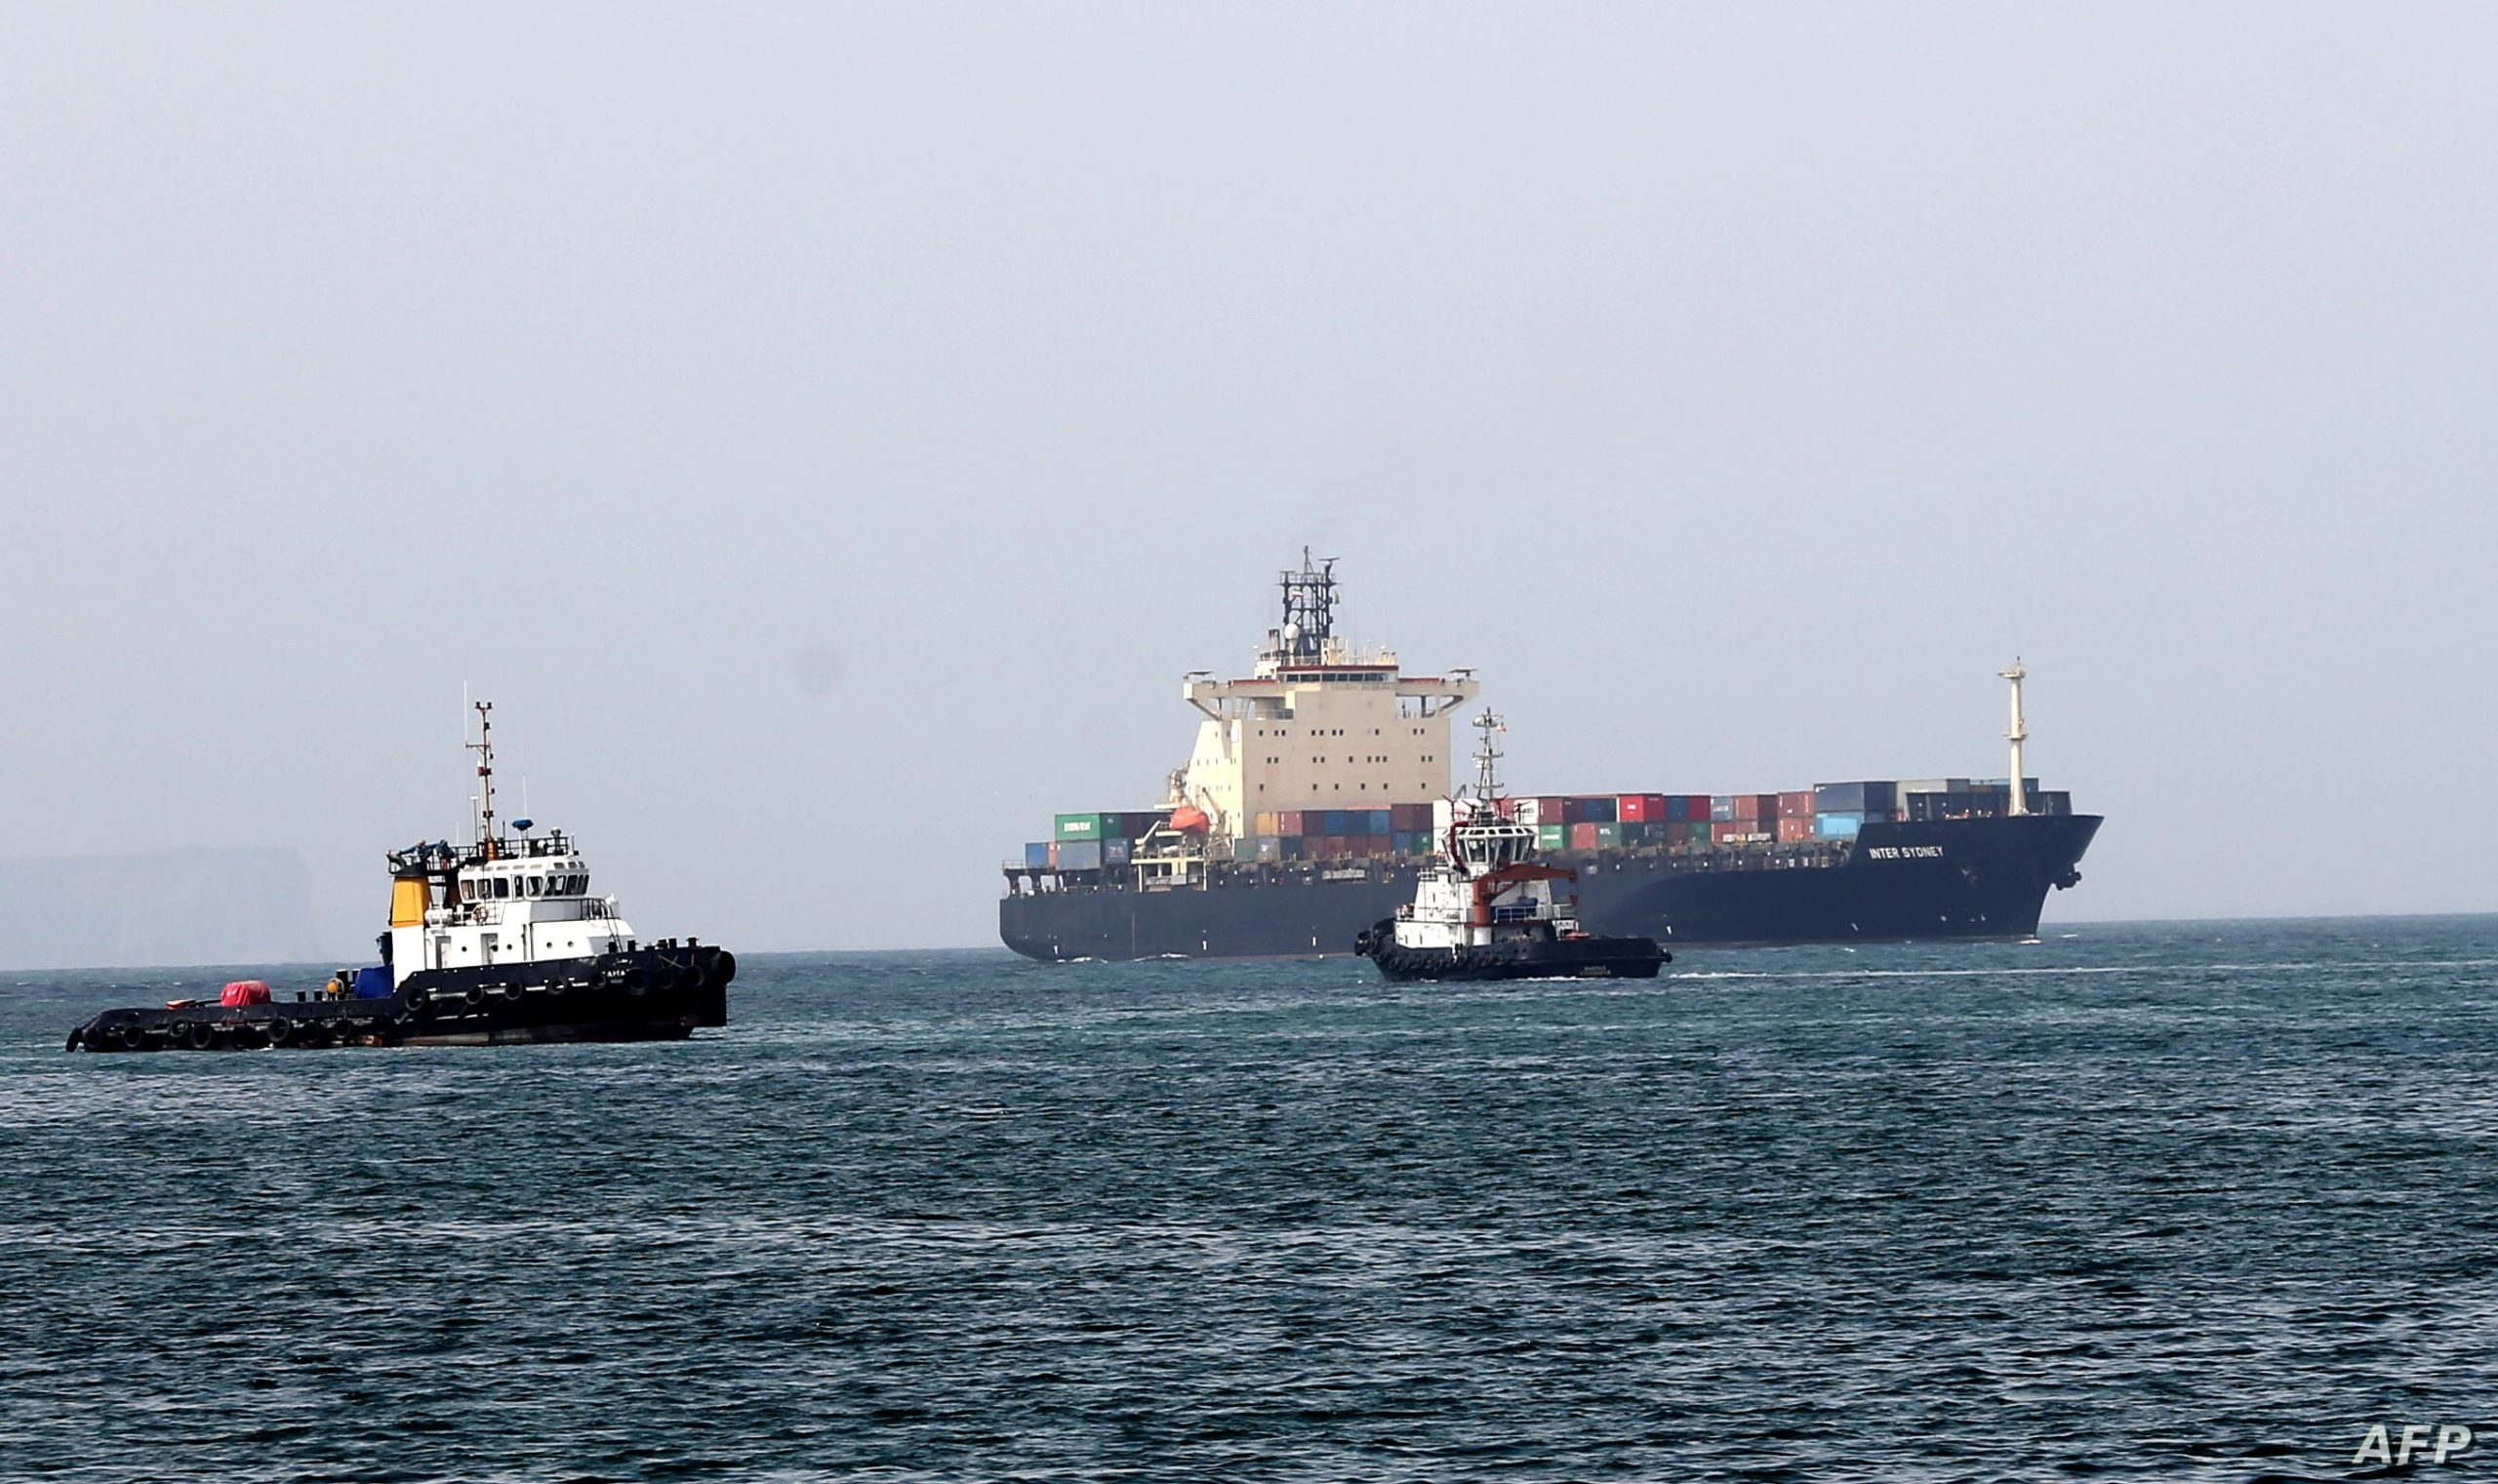 Το Ιράν στέλνει ειδικό κλιμάκιο για έλεγχο σε ένα από τα δεξαμενόπλοια στον Κόλπο